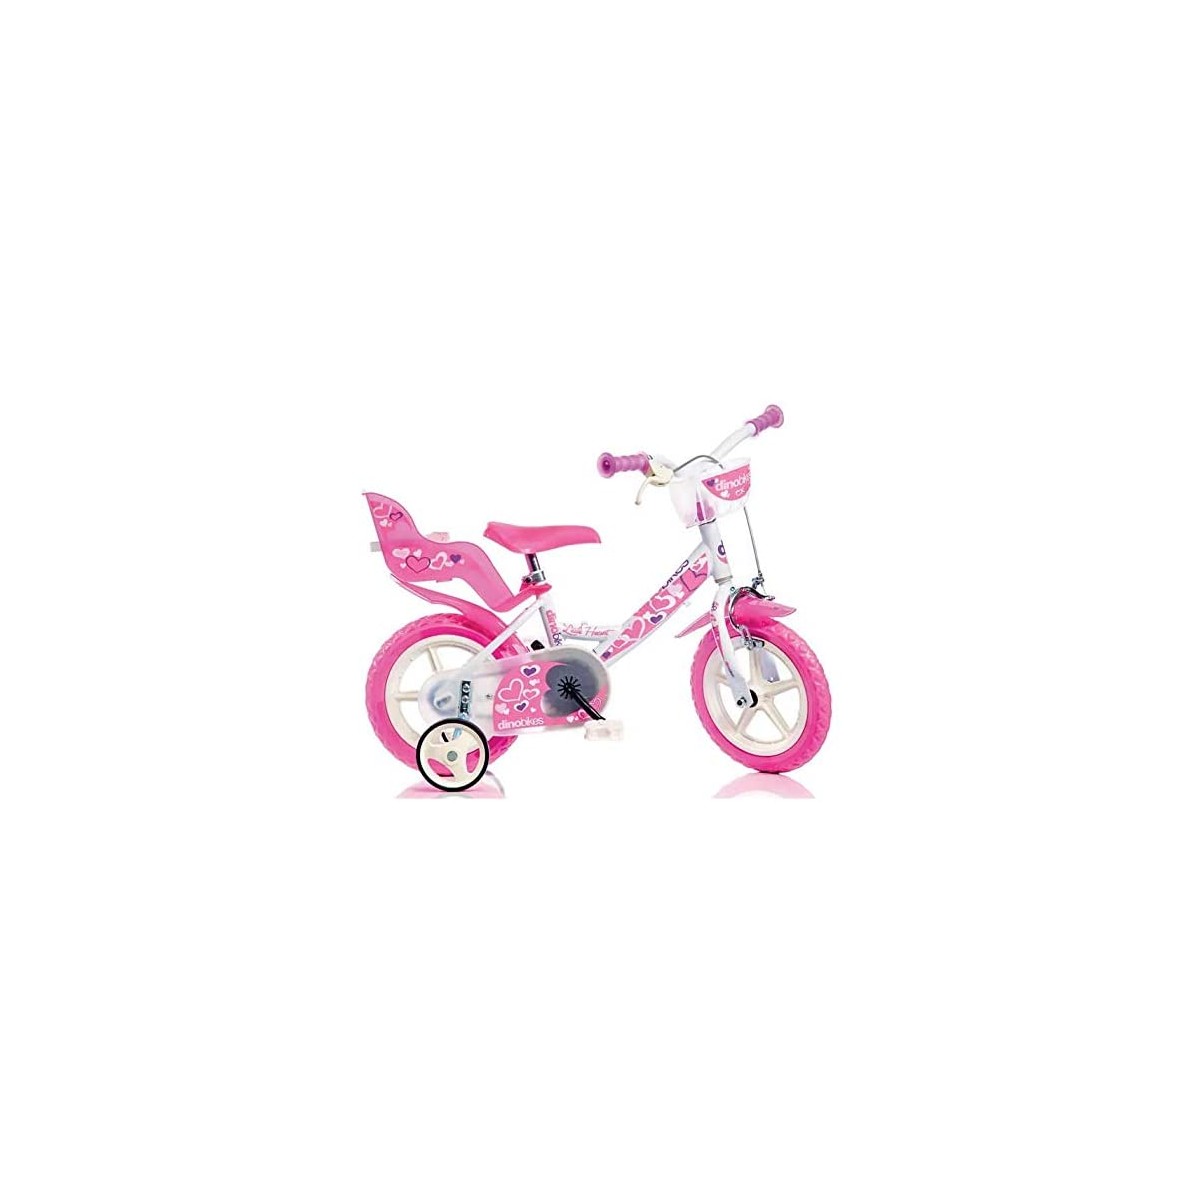 Bicicletta Girl con cuori da 12 pollici per bambine